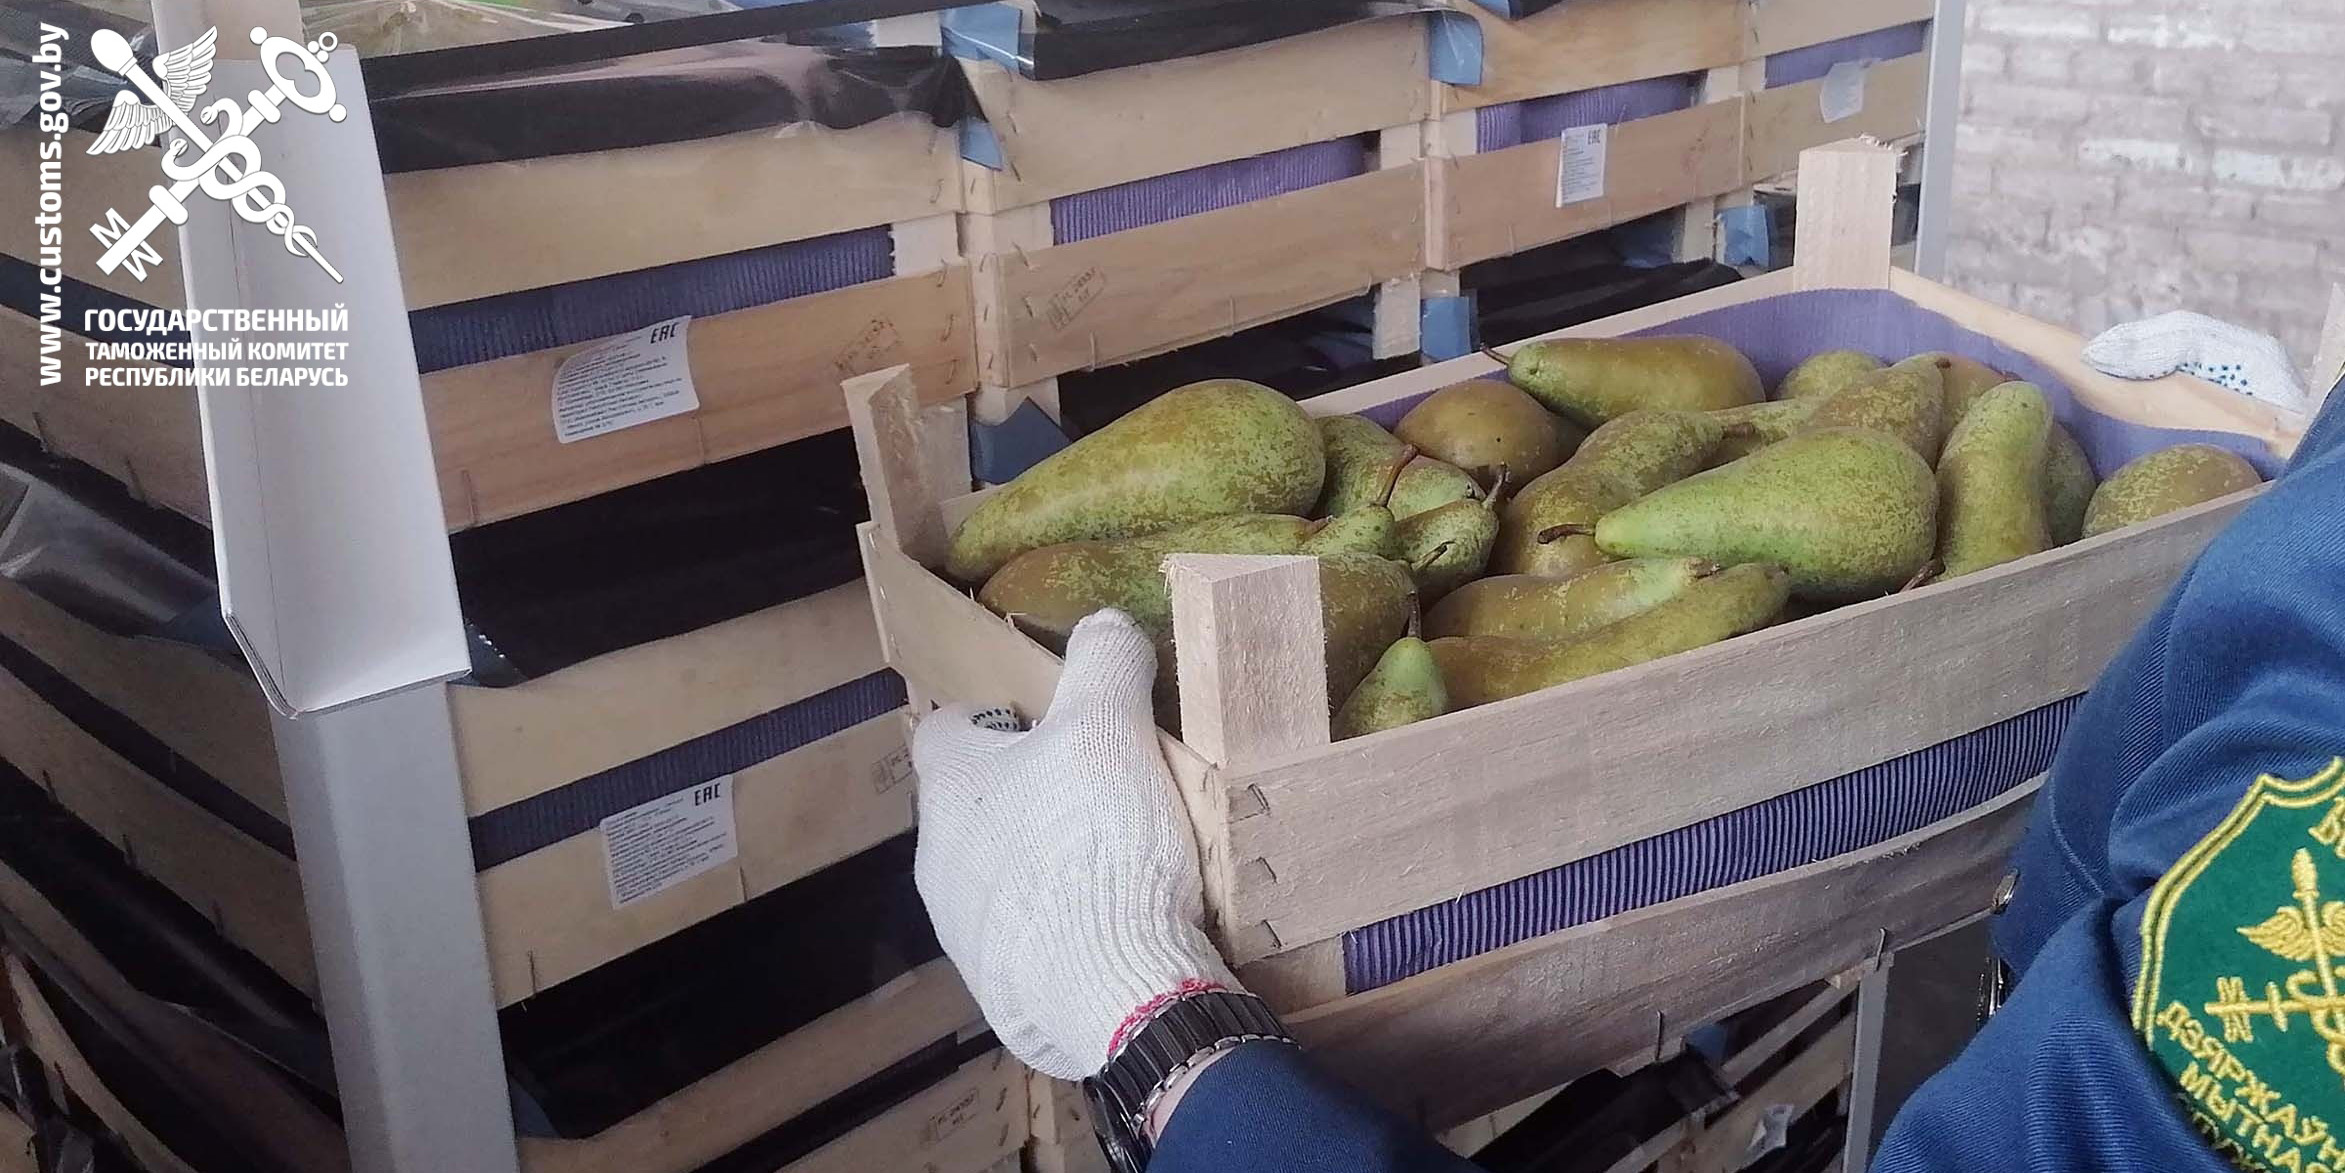 Могилевские таможенники пресекли попытки незаконного перемещения более 38 тонн груш